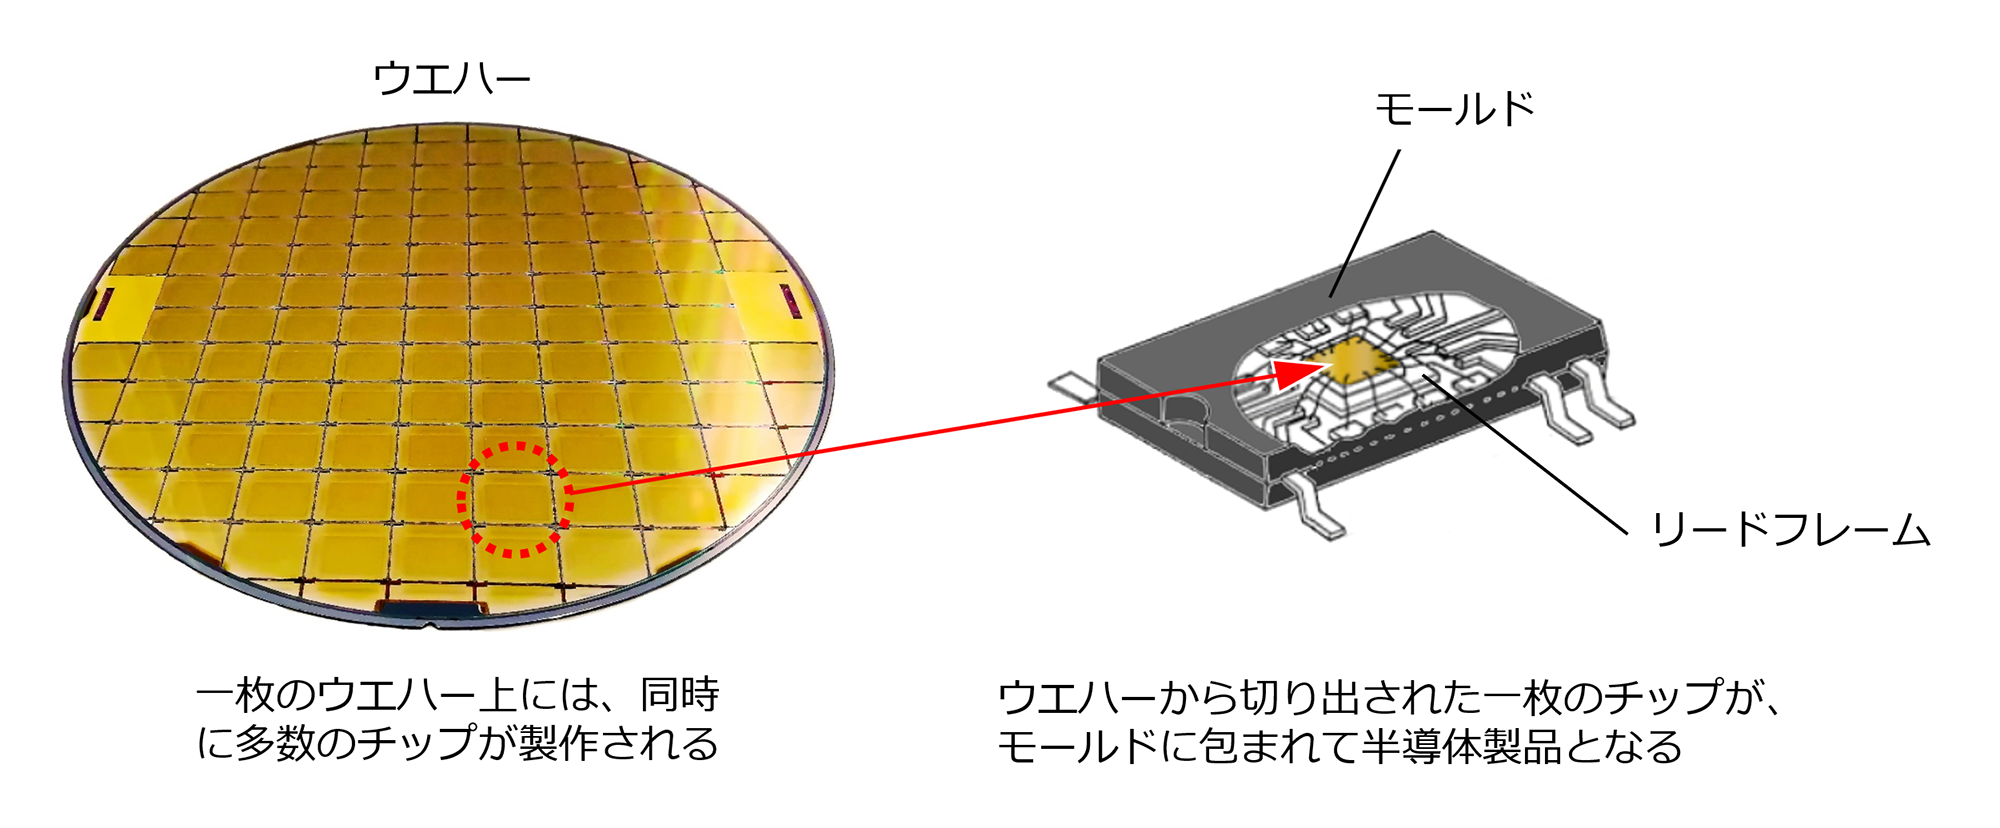 半導体の本体であるチップは、樹脂のモールドに包まれている